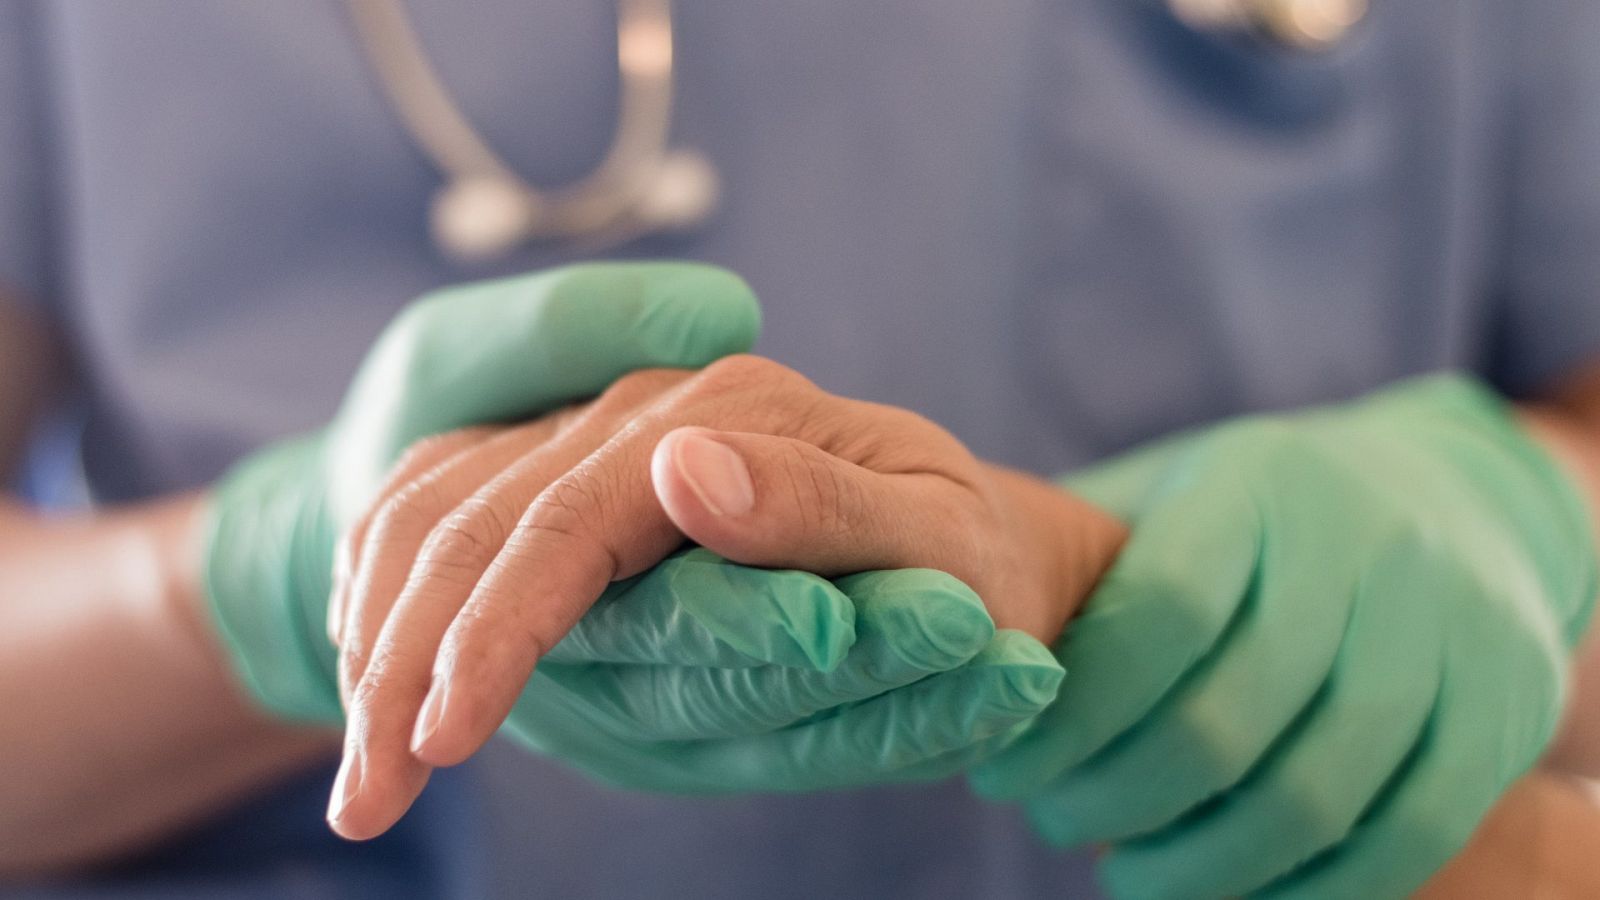 Cirujano, médico realiza operaciones quirúrgicas, anestesista o anestesiólogo sosteniendo la mano del paciente